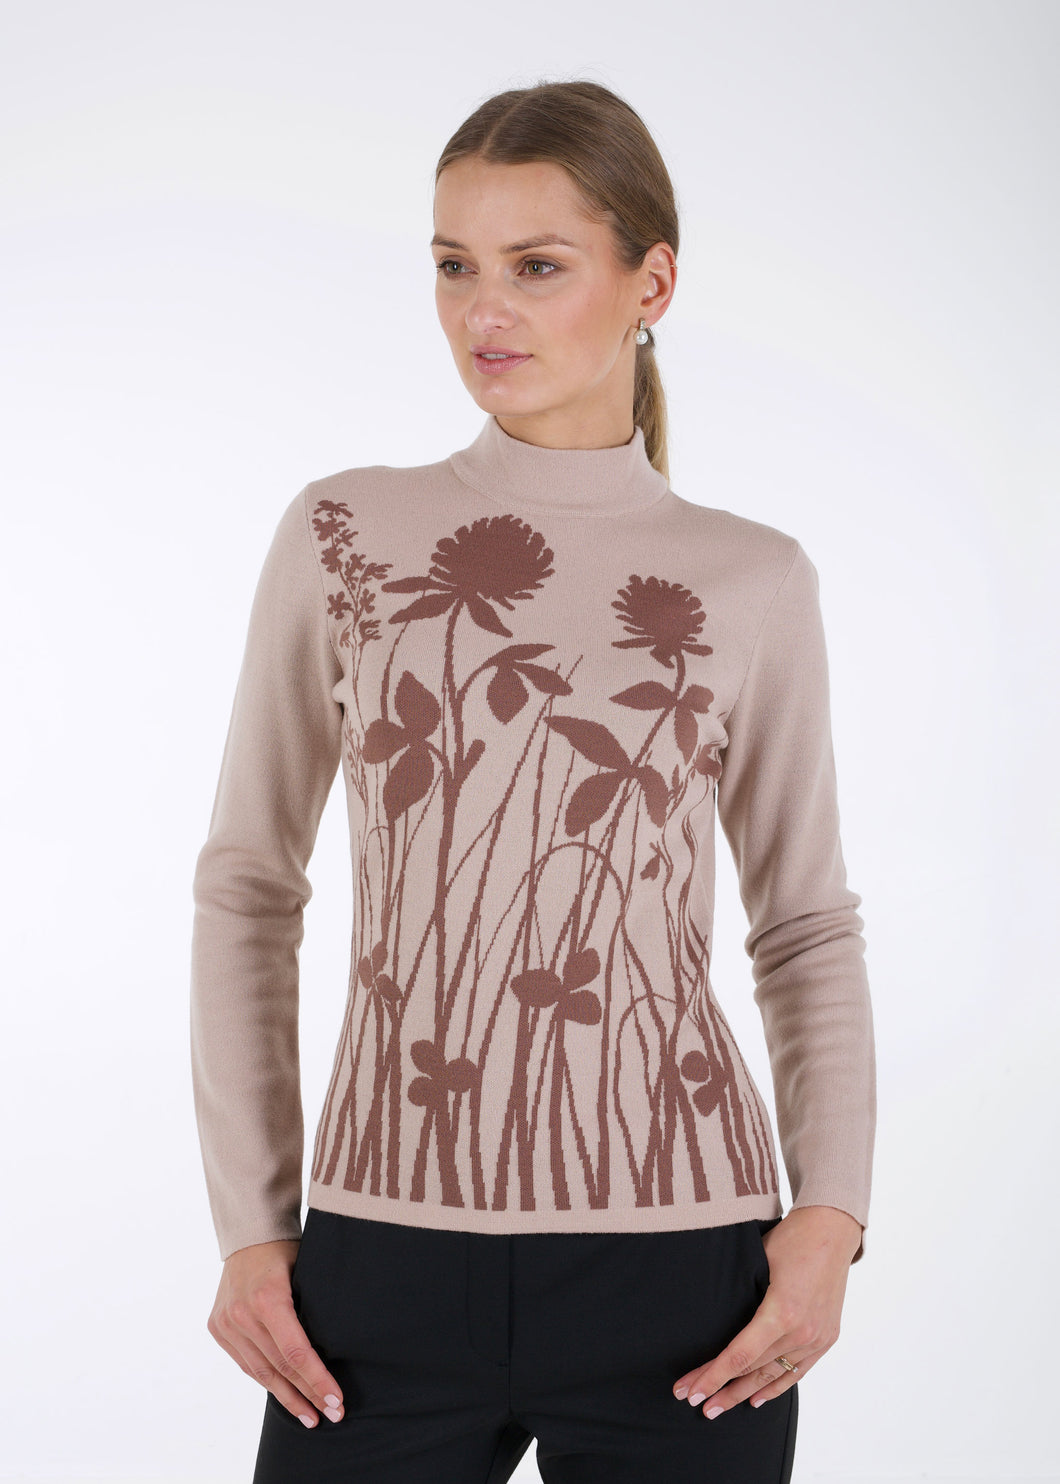 Merino wool jacquard knit top, meadow, beige